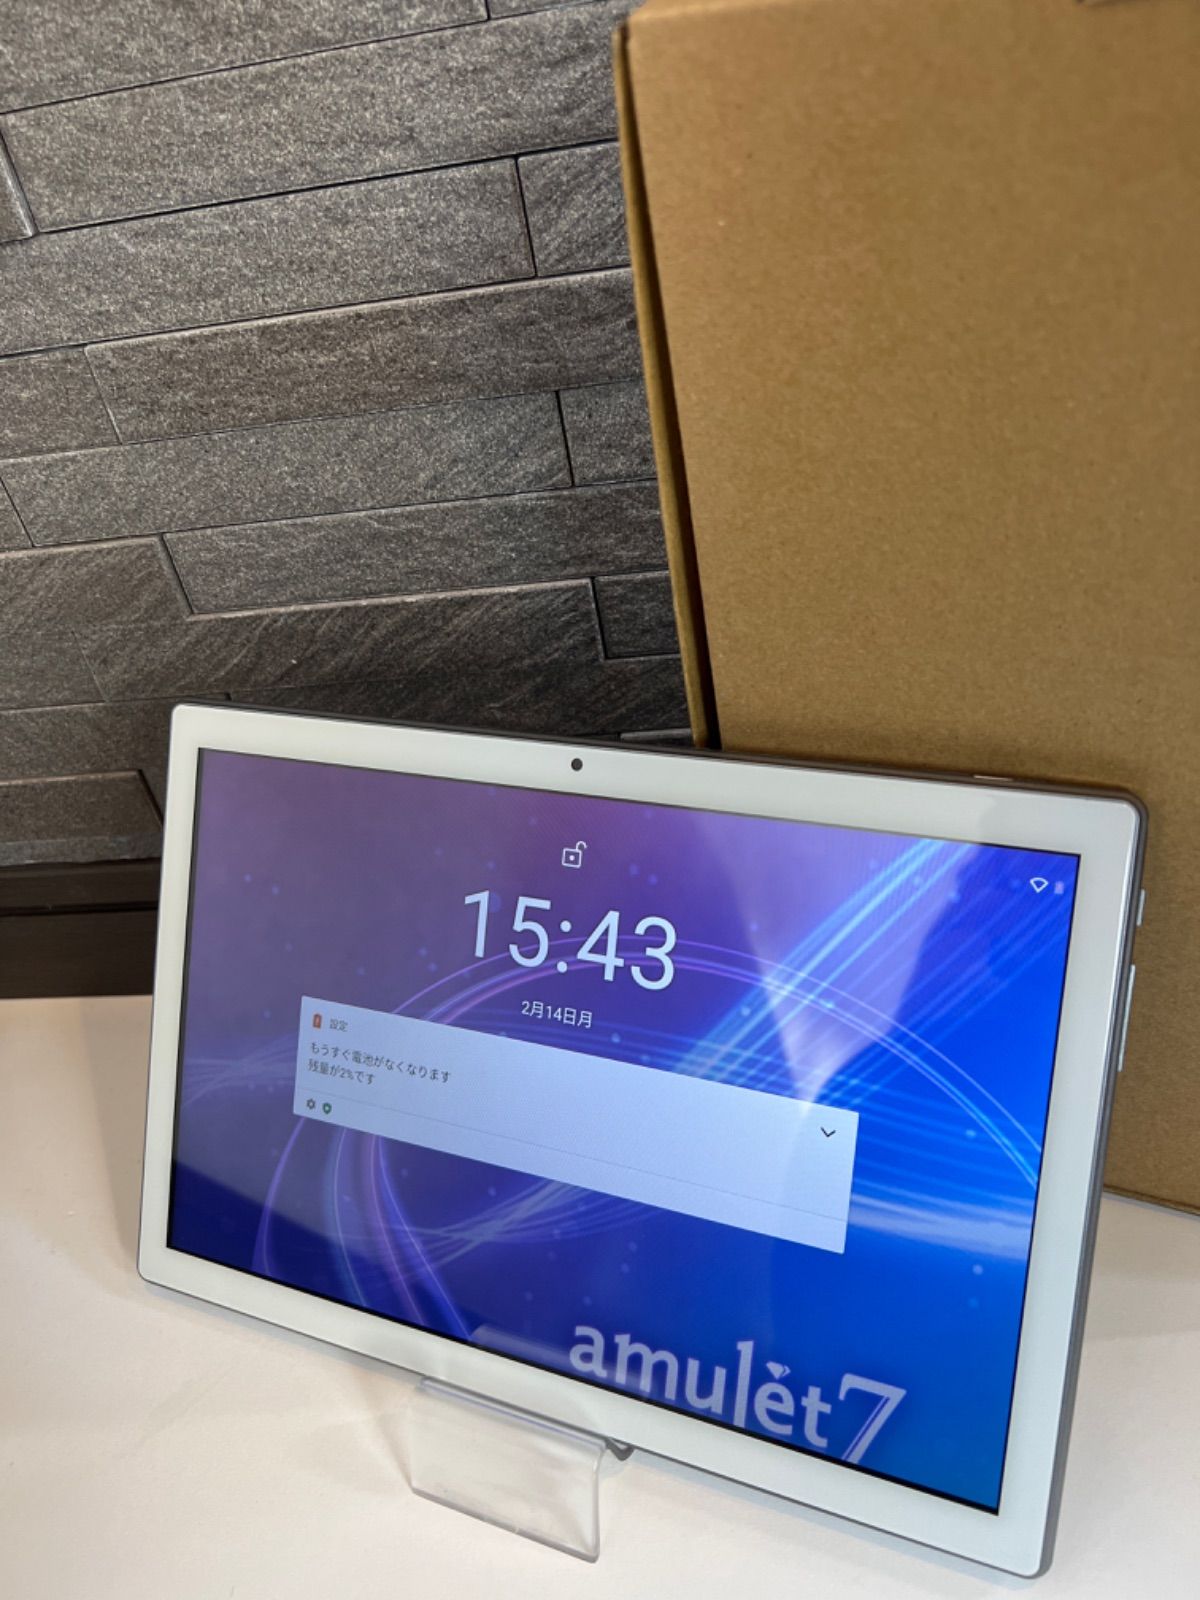 amulet7 10.1インチタブレット型PC P10SU_Plus